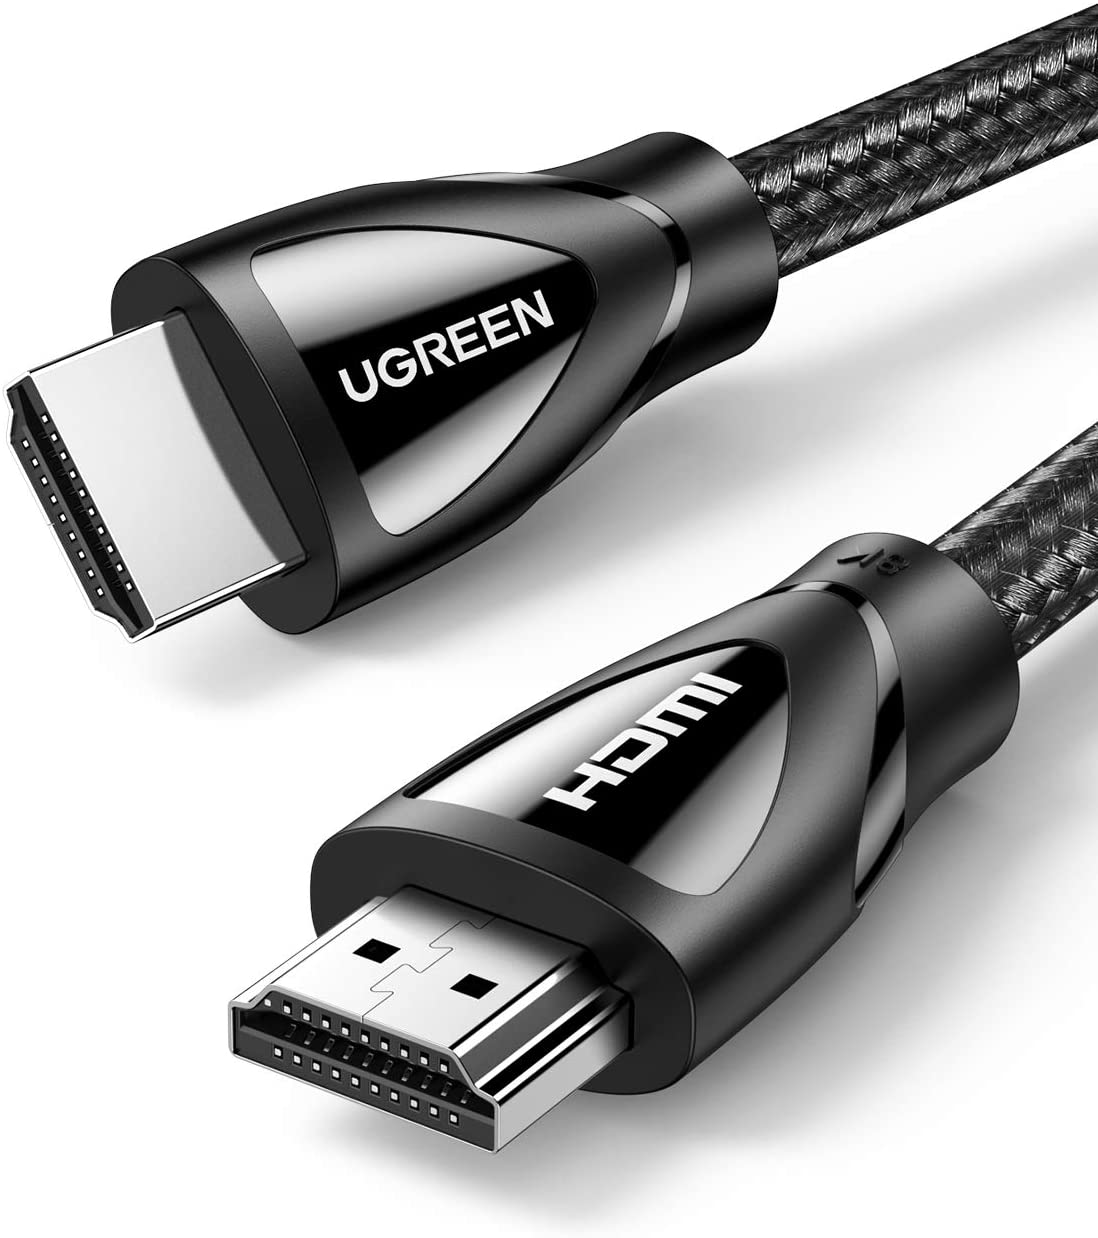 CABLING® Câble Adaptateur port USB-C femelle vers HDMI mâle - entrée USB  Type C 3.1, sortie HDMI adaptateur 4 K 60 Hz - câble nylon 20 cm